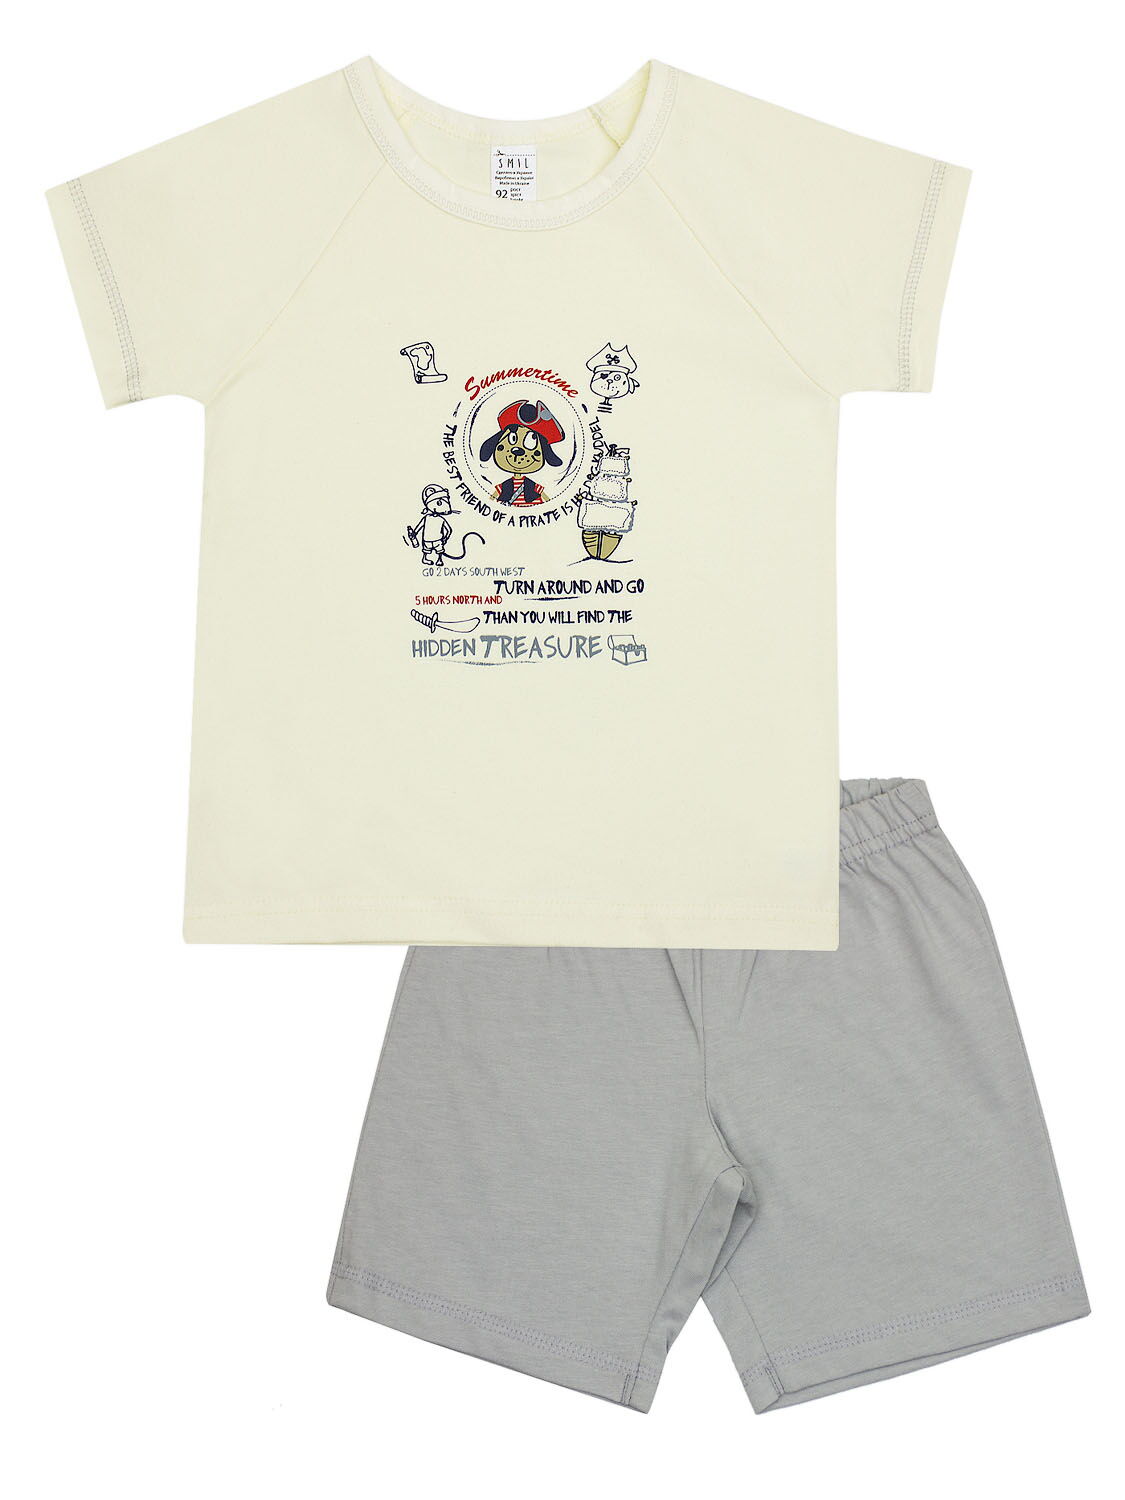 Пижама для мальчика (футболка+шорты) SMIL кремовая 104391 - цена